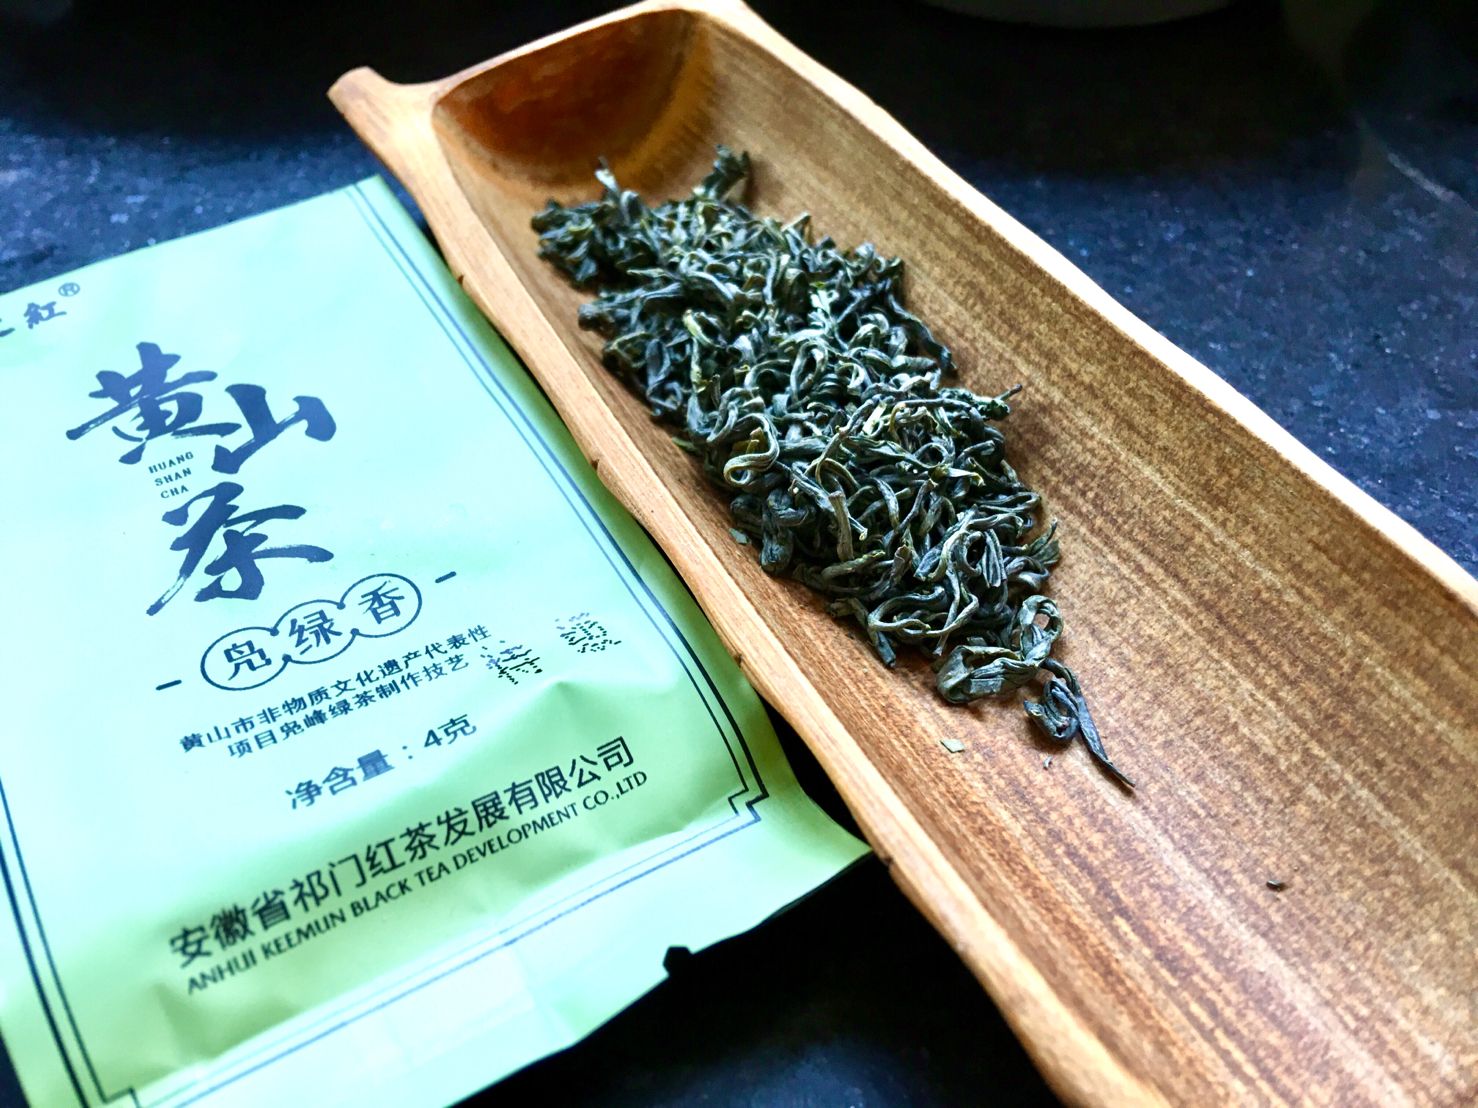 Chǎo Qīng Lǜ Chá, 炒青绿茶, Fried Green Tea